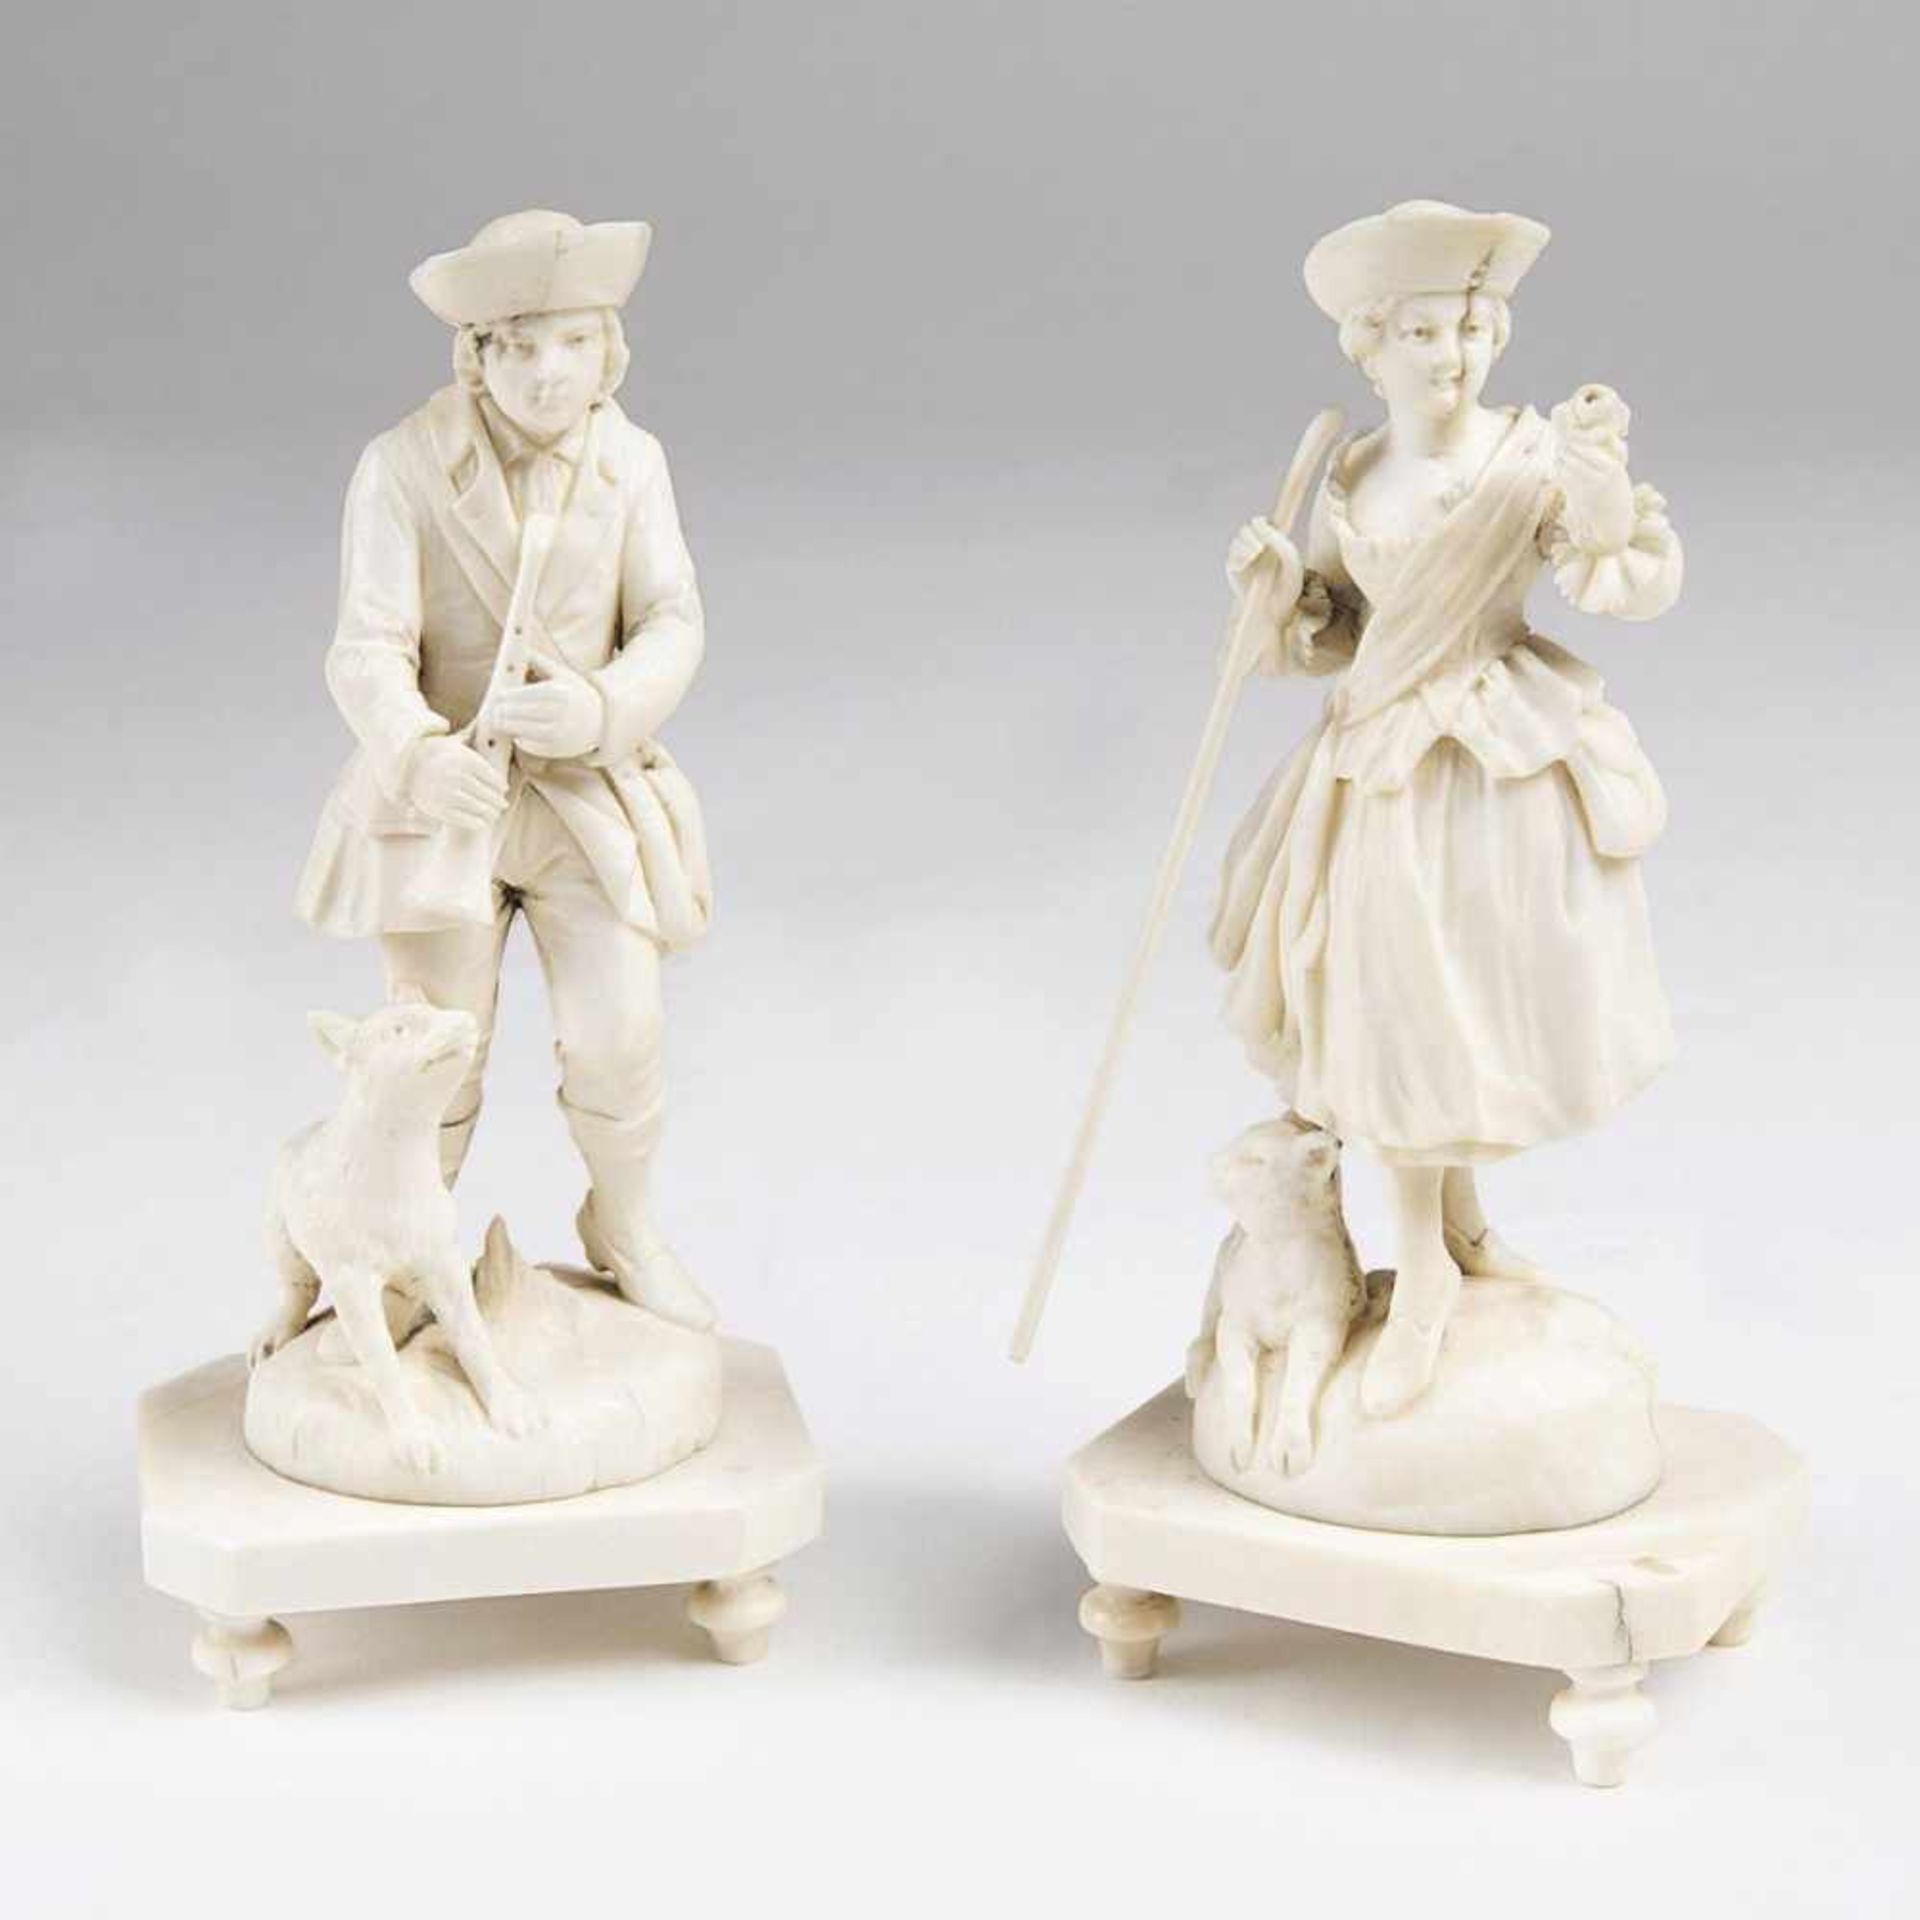 Paar Elfenbein-Figuren 'Schäfer und Schäferin'Erbach, 19. Jh. Elfenbein, geschnitzt. Jeweils auf